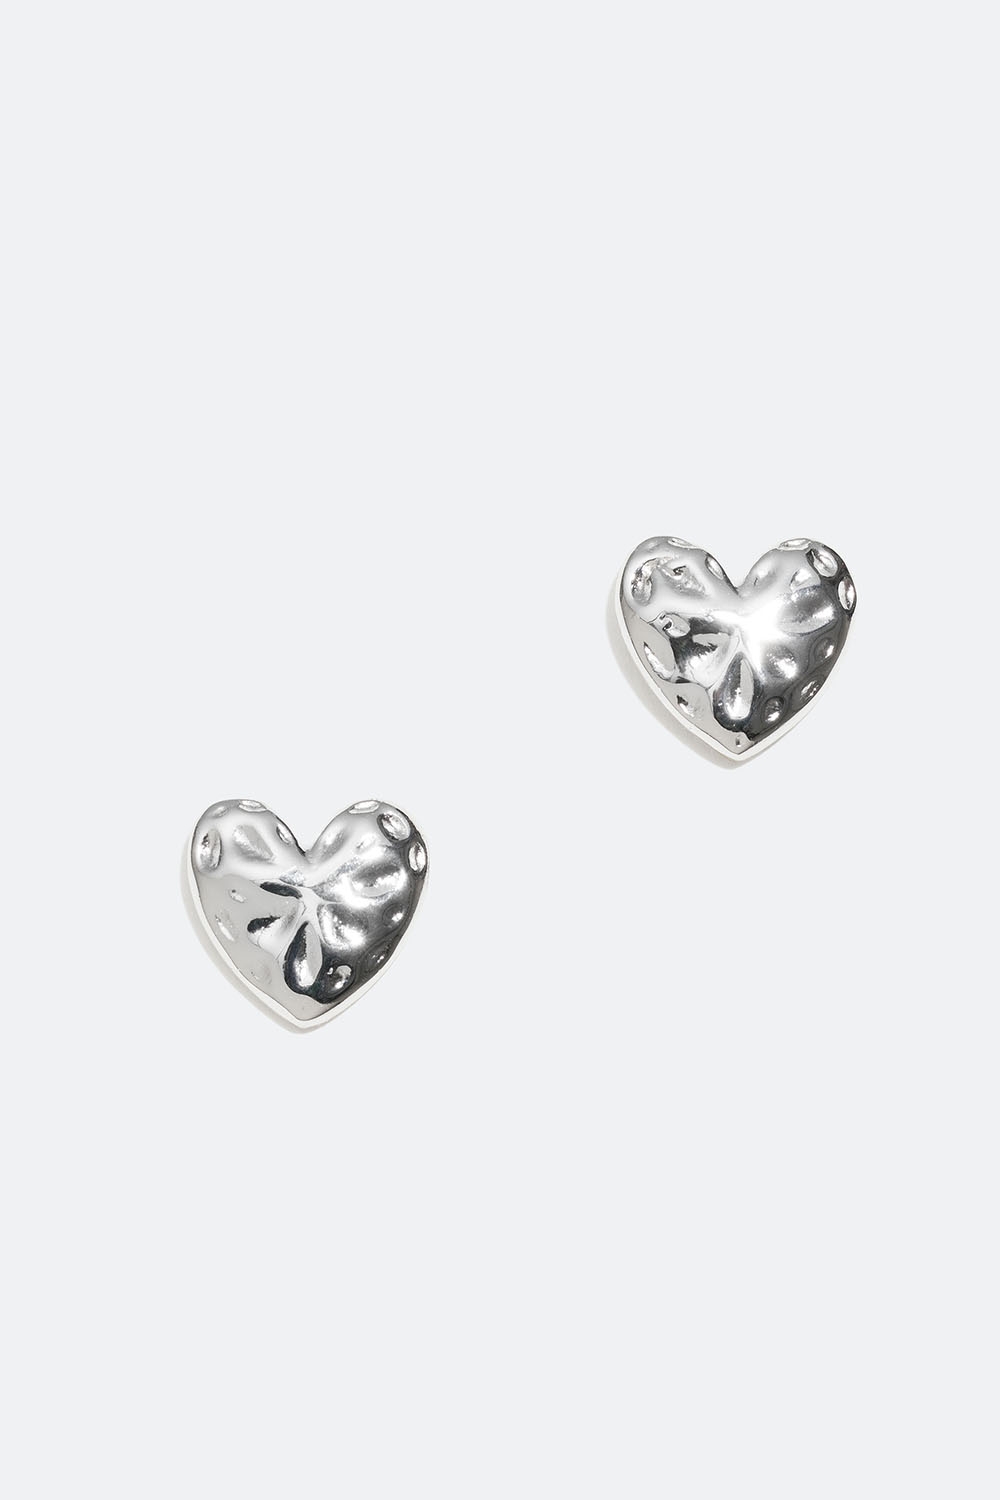 Stud i äkta silver med hjärtan i hamrad design i gruppen Äkta silver / Silverörhängen / Studs i äkta silver hos Glitter (553003141001)